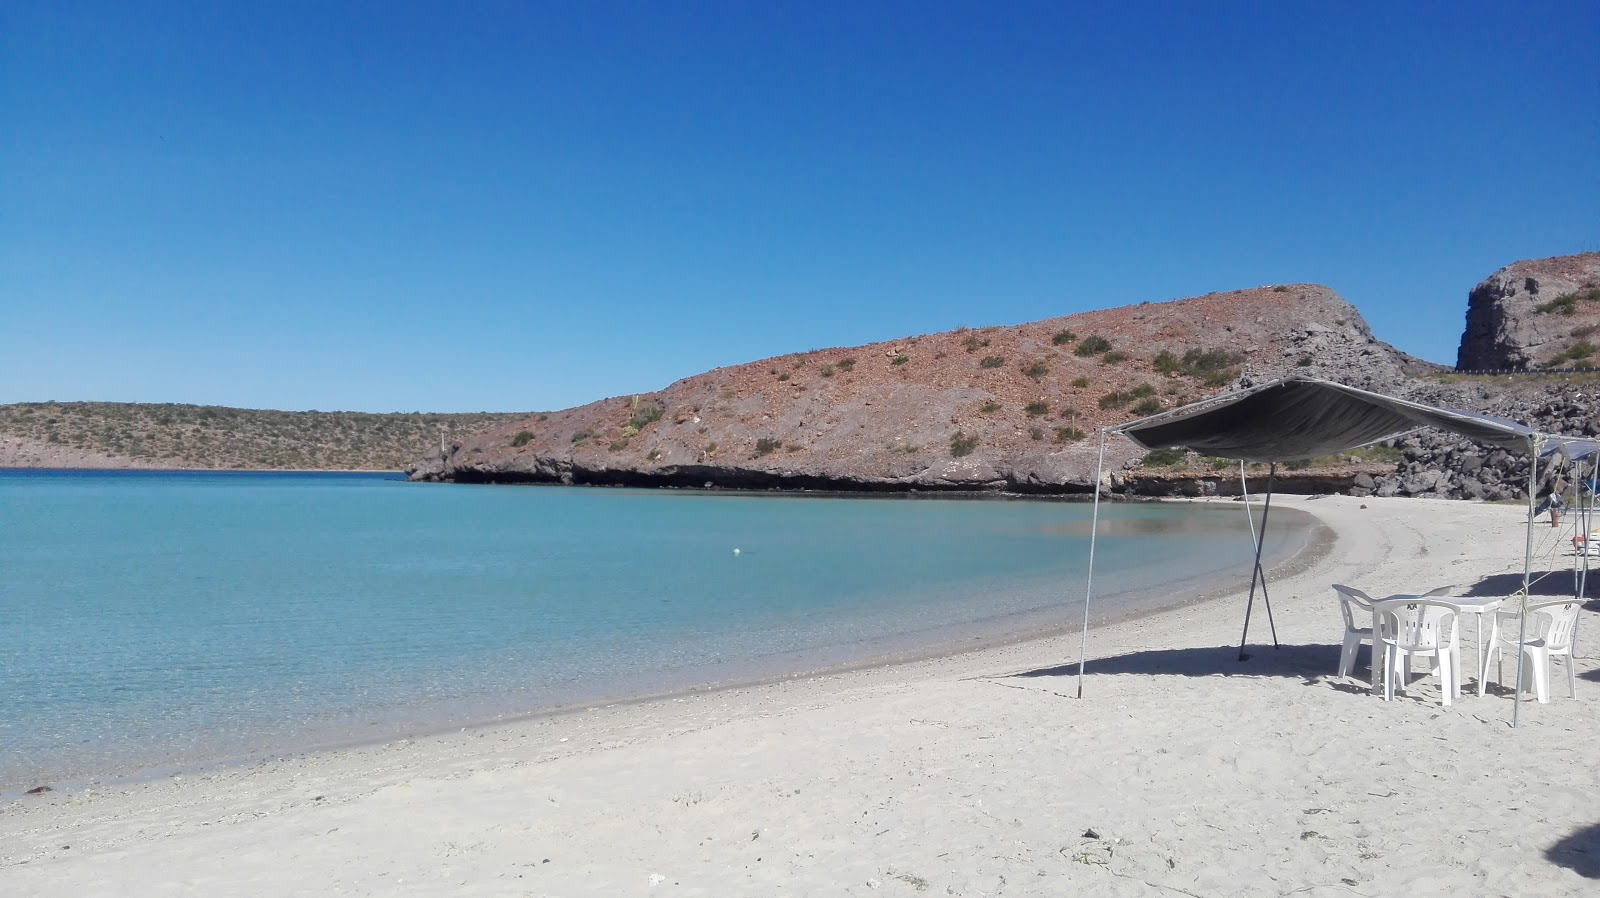 Playa El Tesoro'in fotoğrafı parlak kum yüzey ile